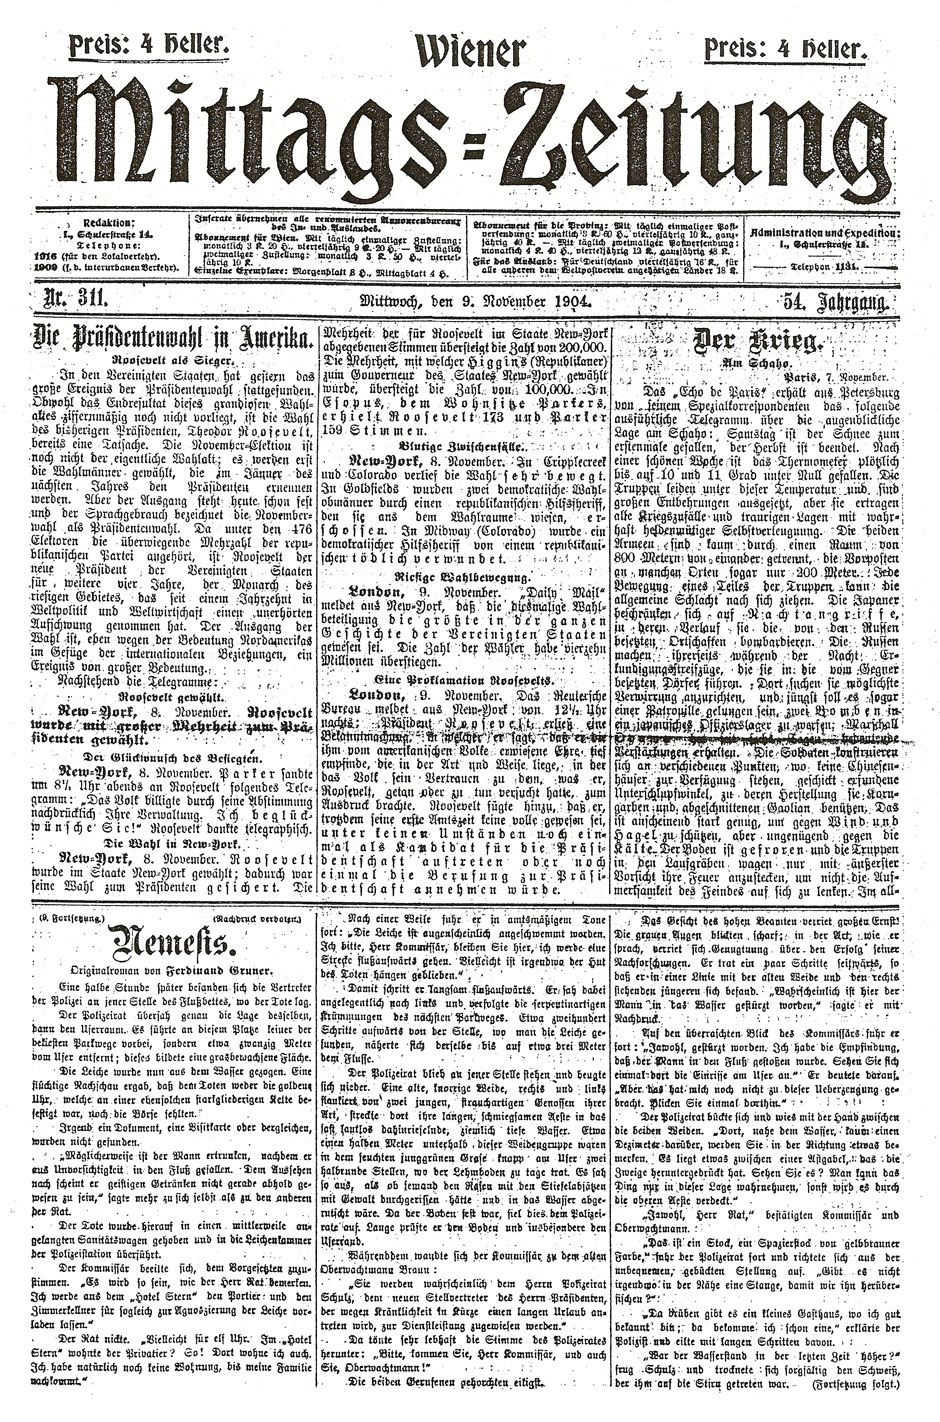 Wiener Mittags-Zeitung, 9.11.1904; Seite 1